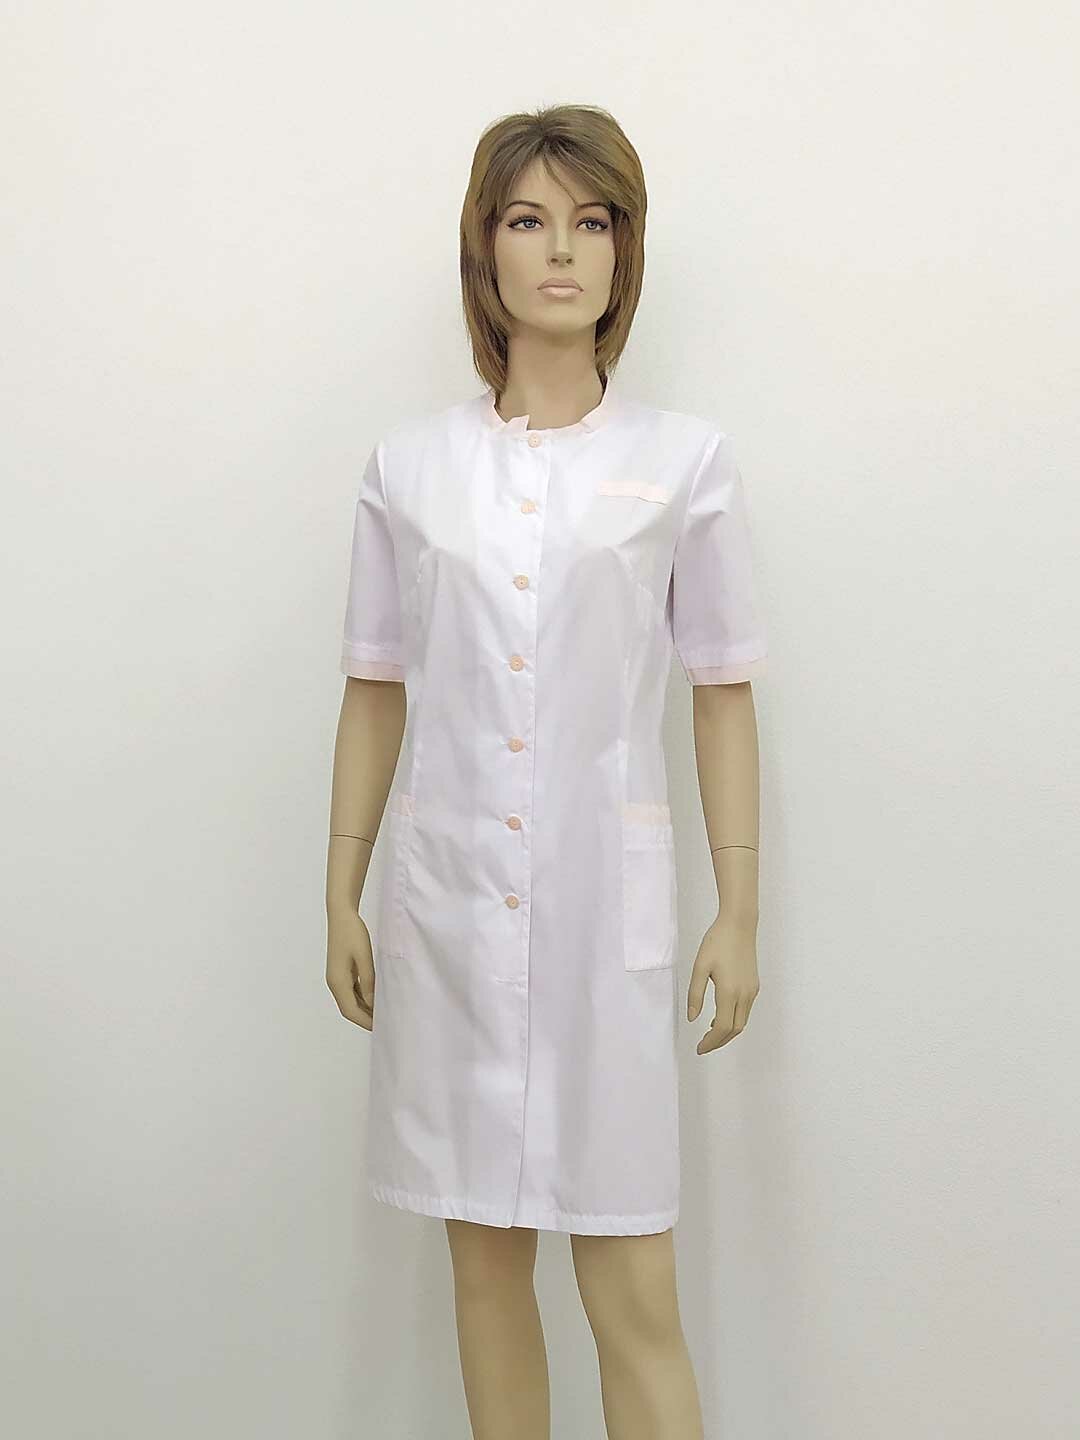 Халат женский, производитель Фабрика швейных изделий №3, модель М-572, рост 164, размер 46, ткань поликот, цвет белый с бежевой отделкой